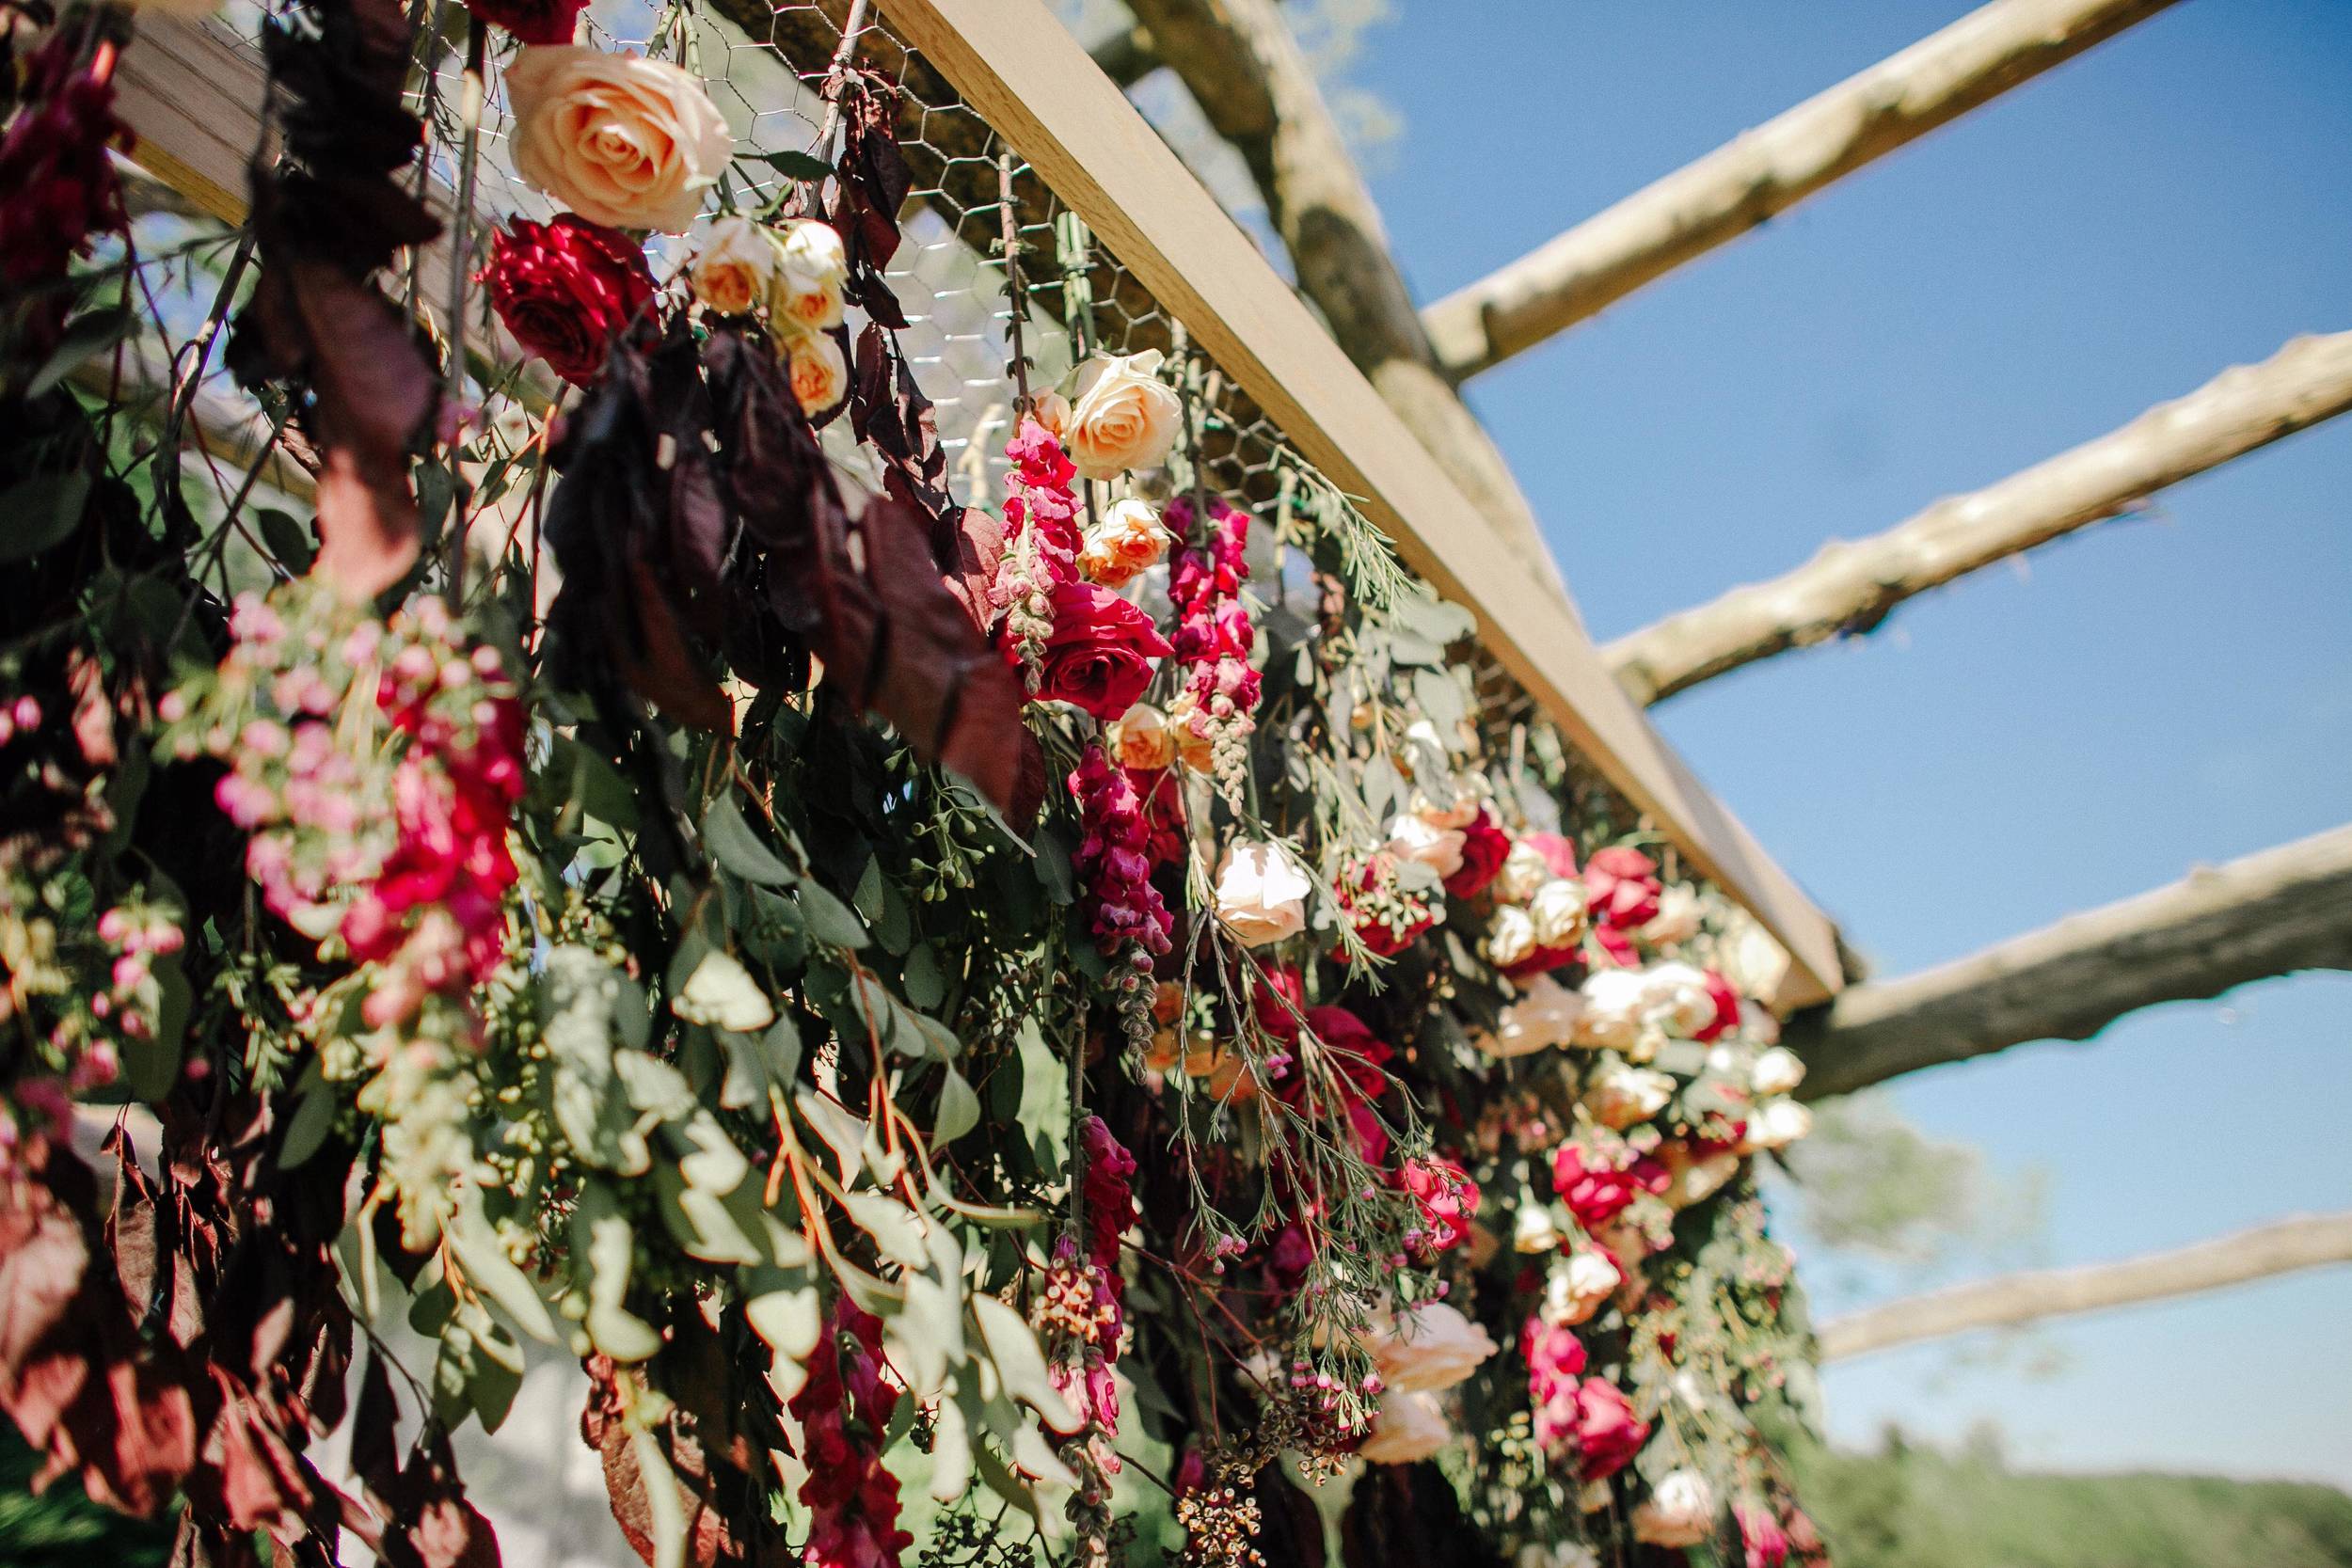 Vibrant floral installation for wedding ceremony backdrop // Destination Wedding Floral Design